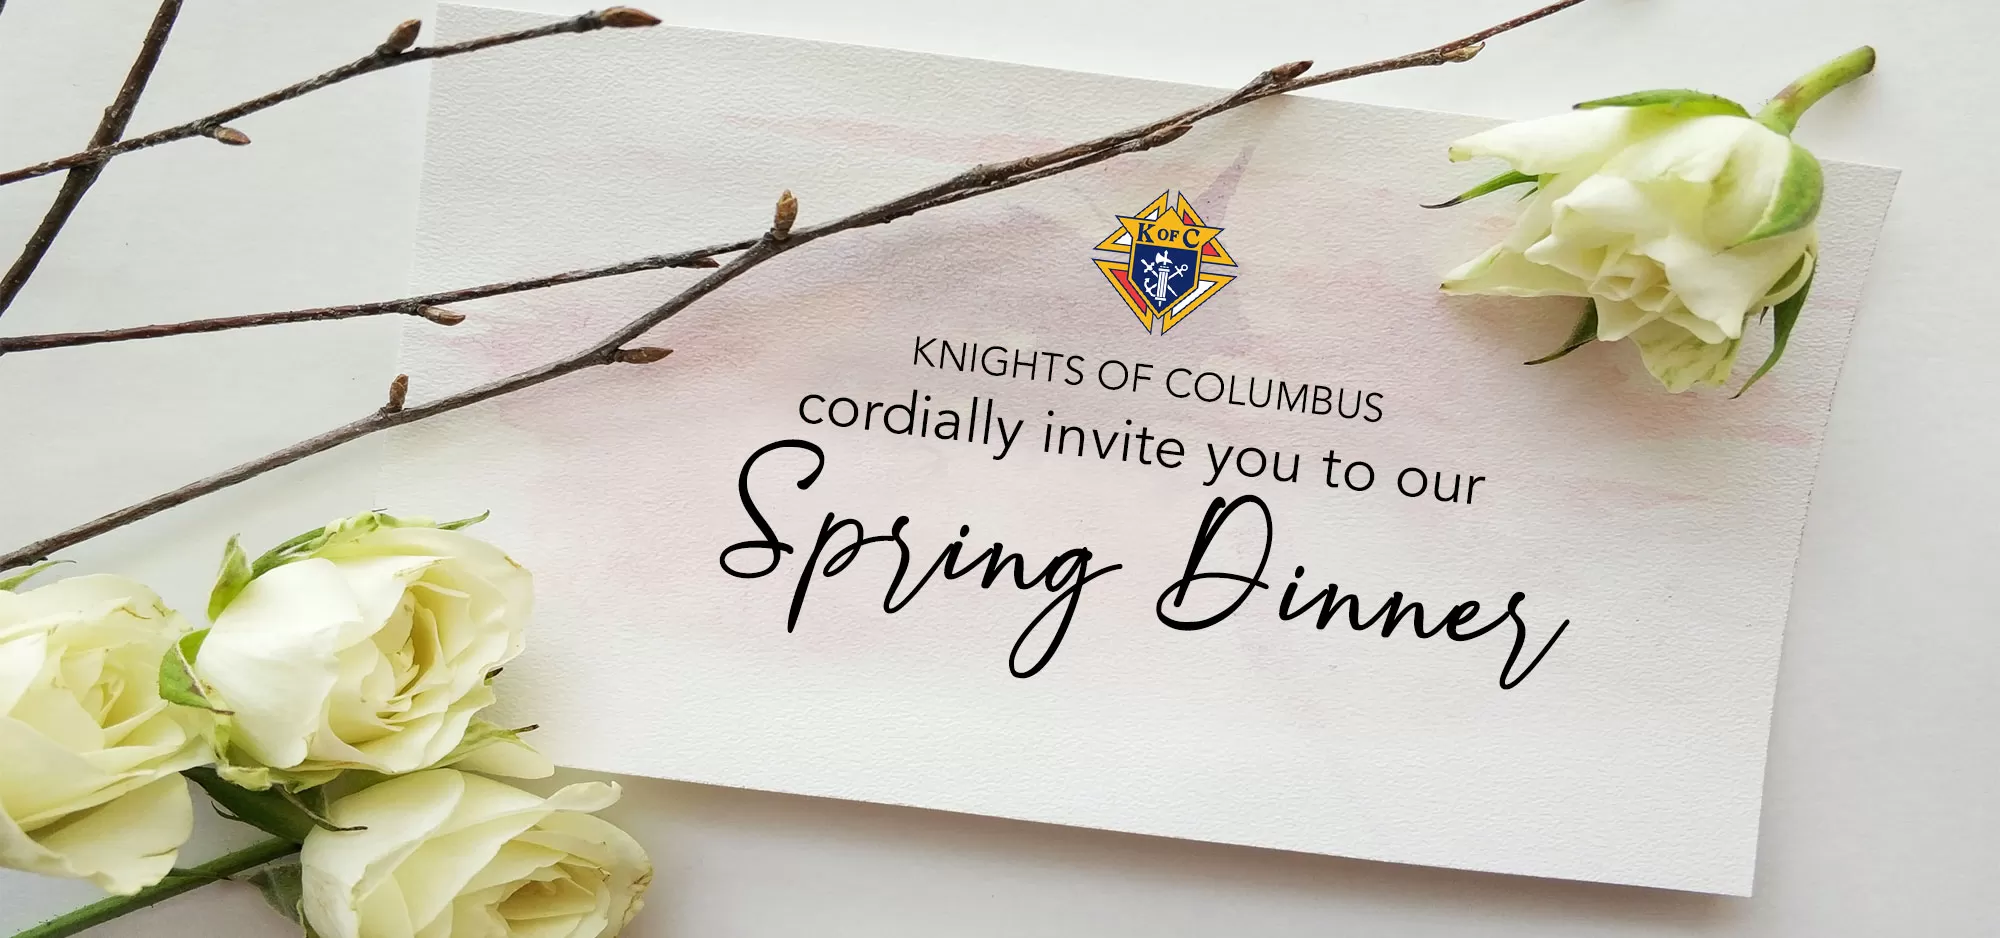 Knights of Columbus Spring Dinner